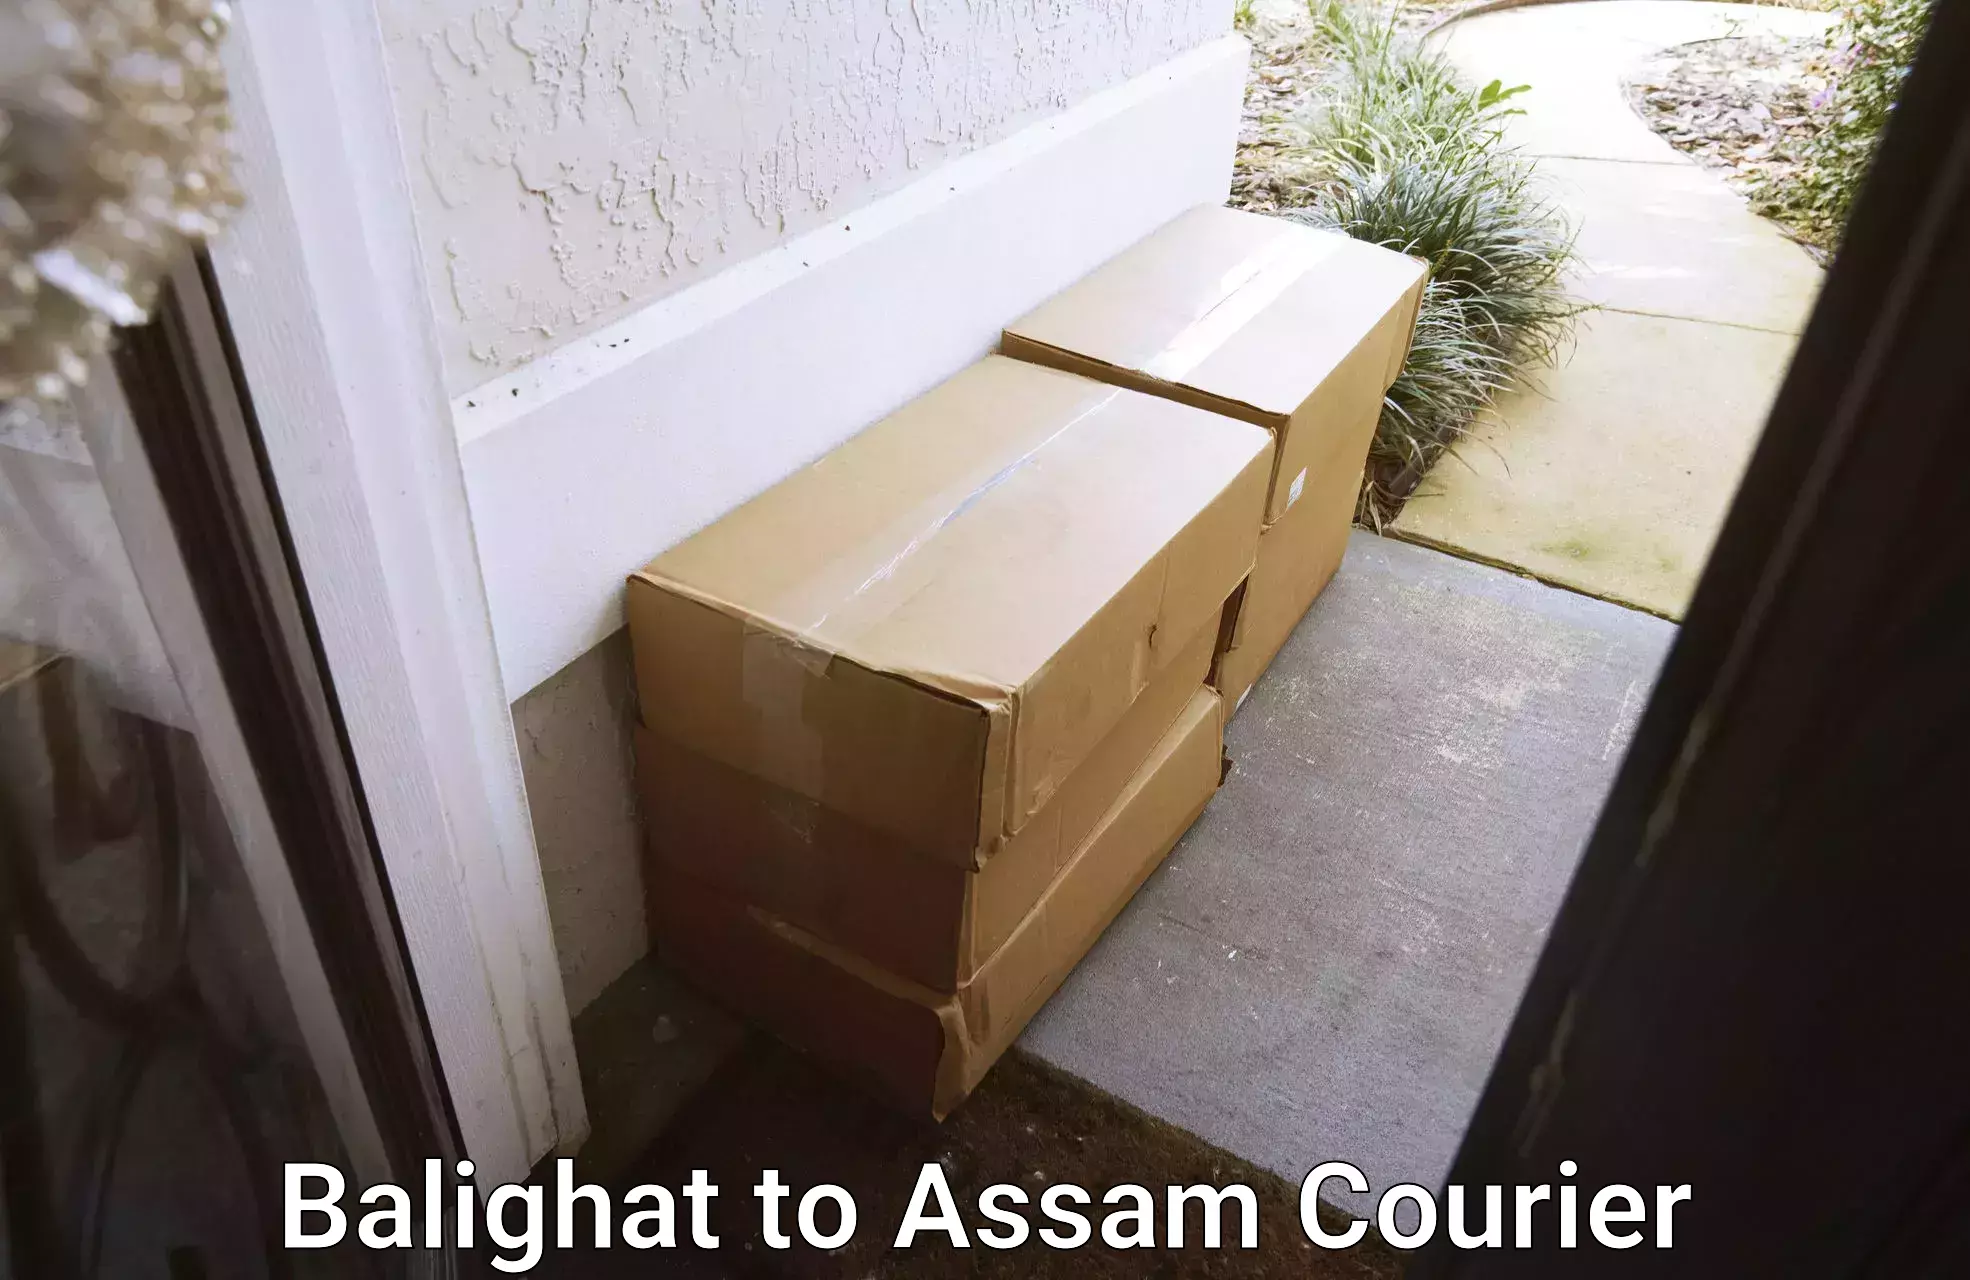 Efficient parcel service Balighat to Assam